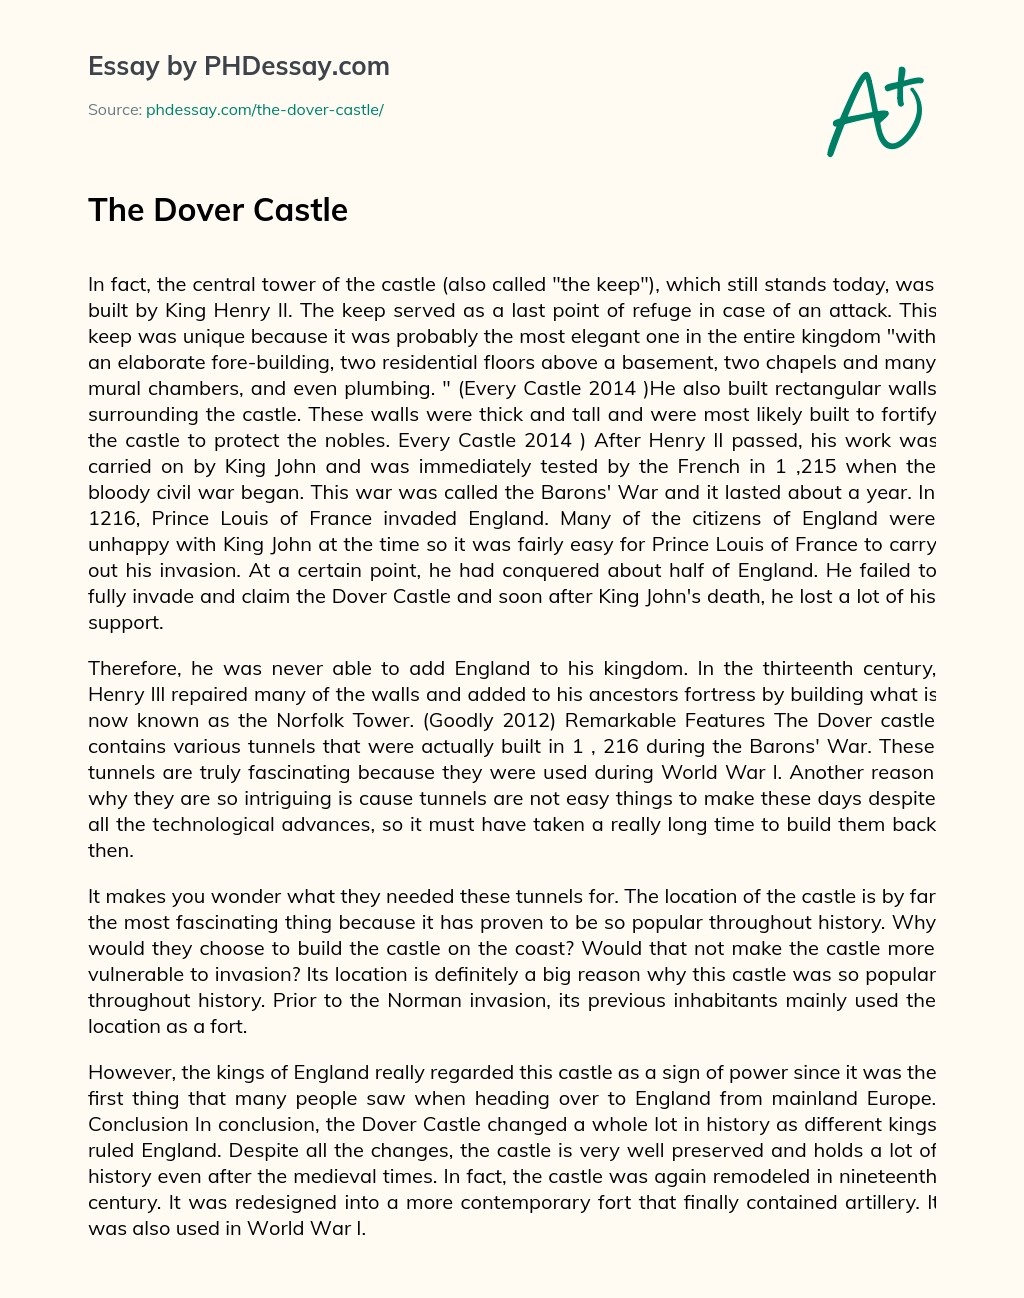 The Dover Castle essay